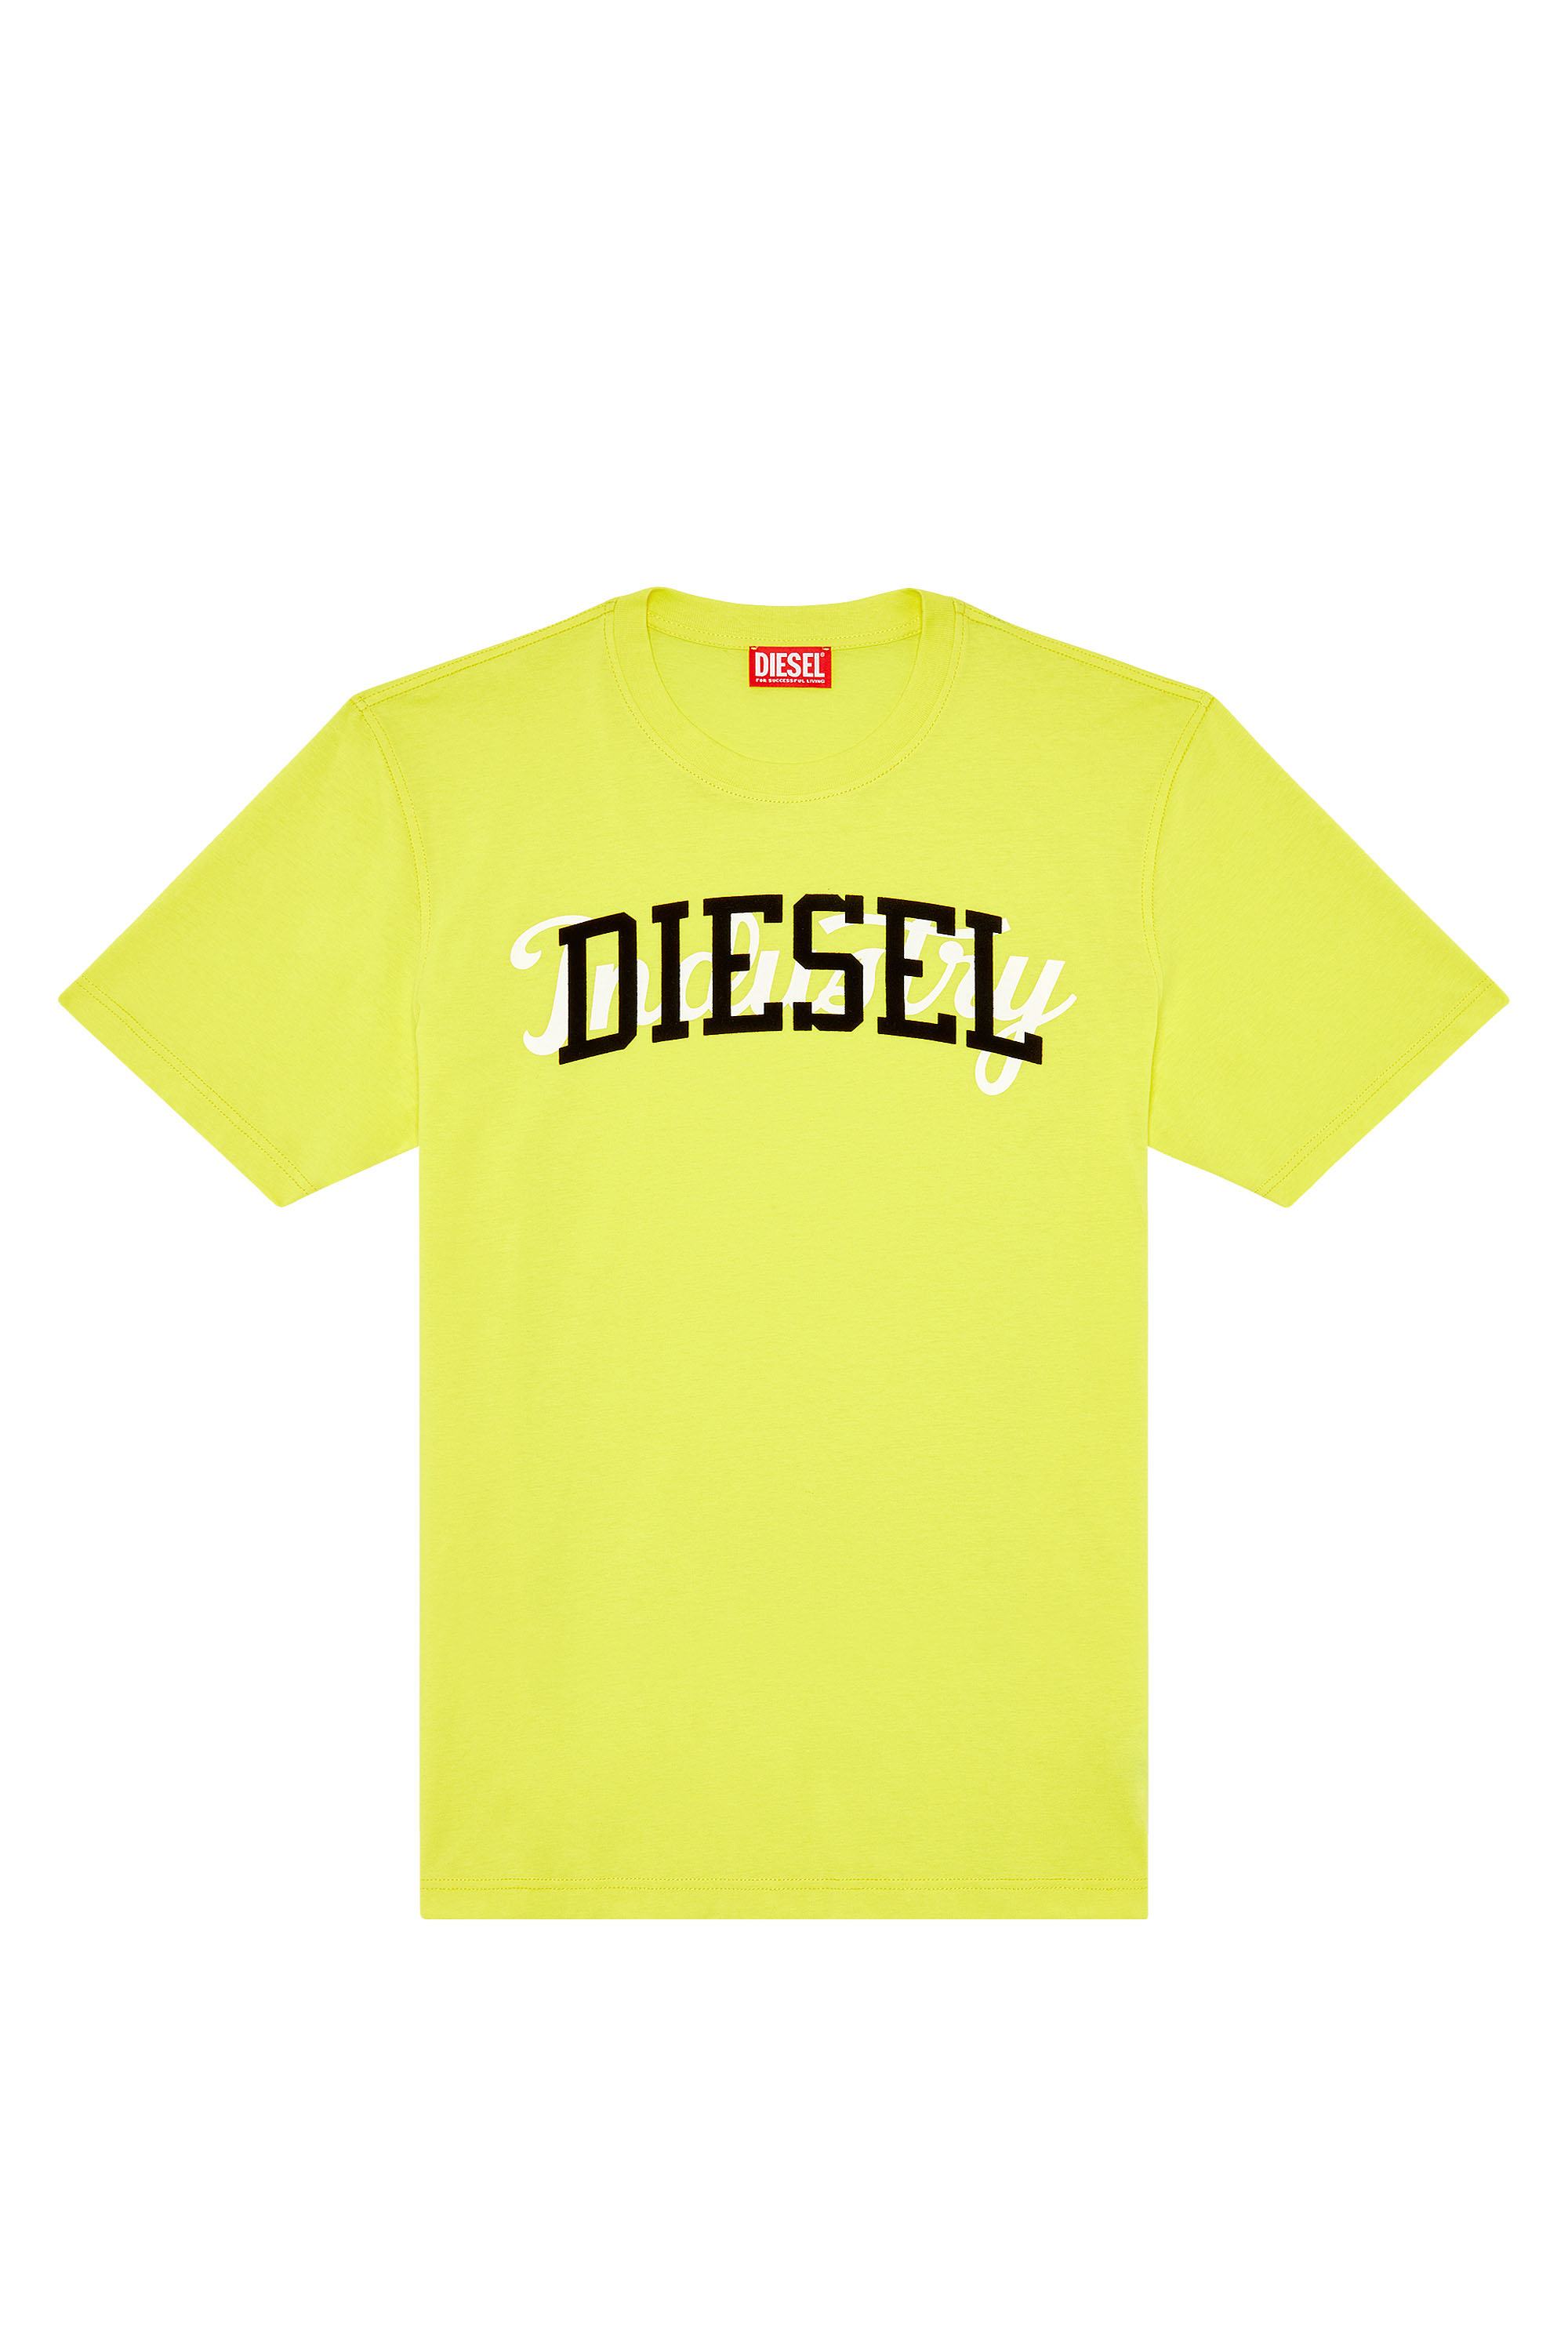 Diesel - T-JUST-N10, Yellow - Image 4